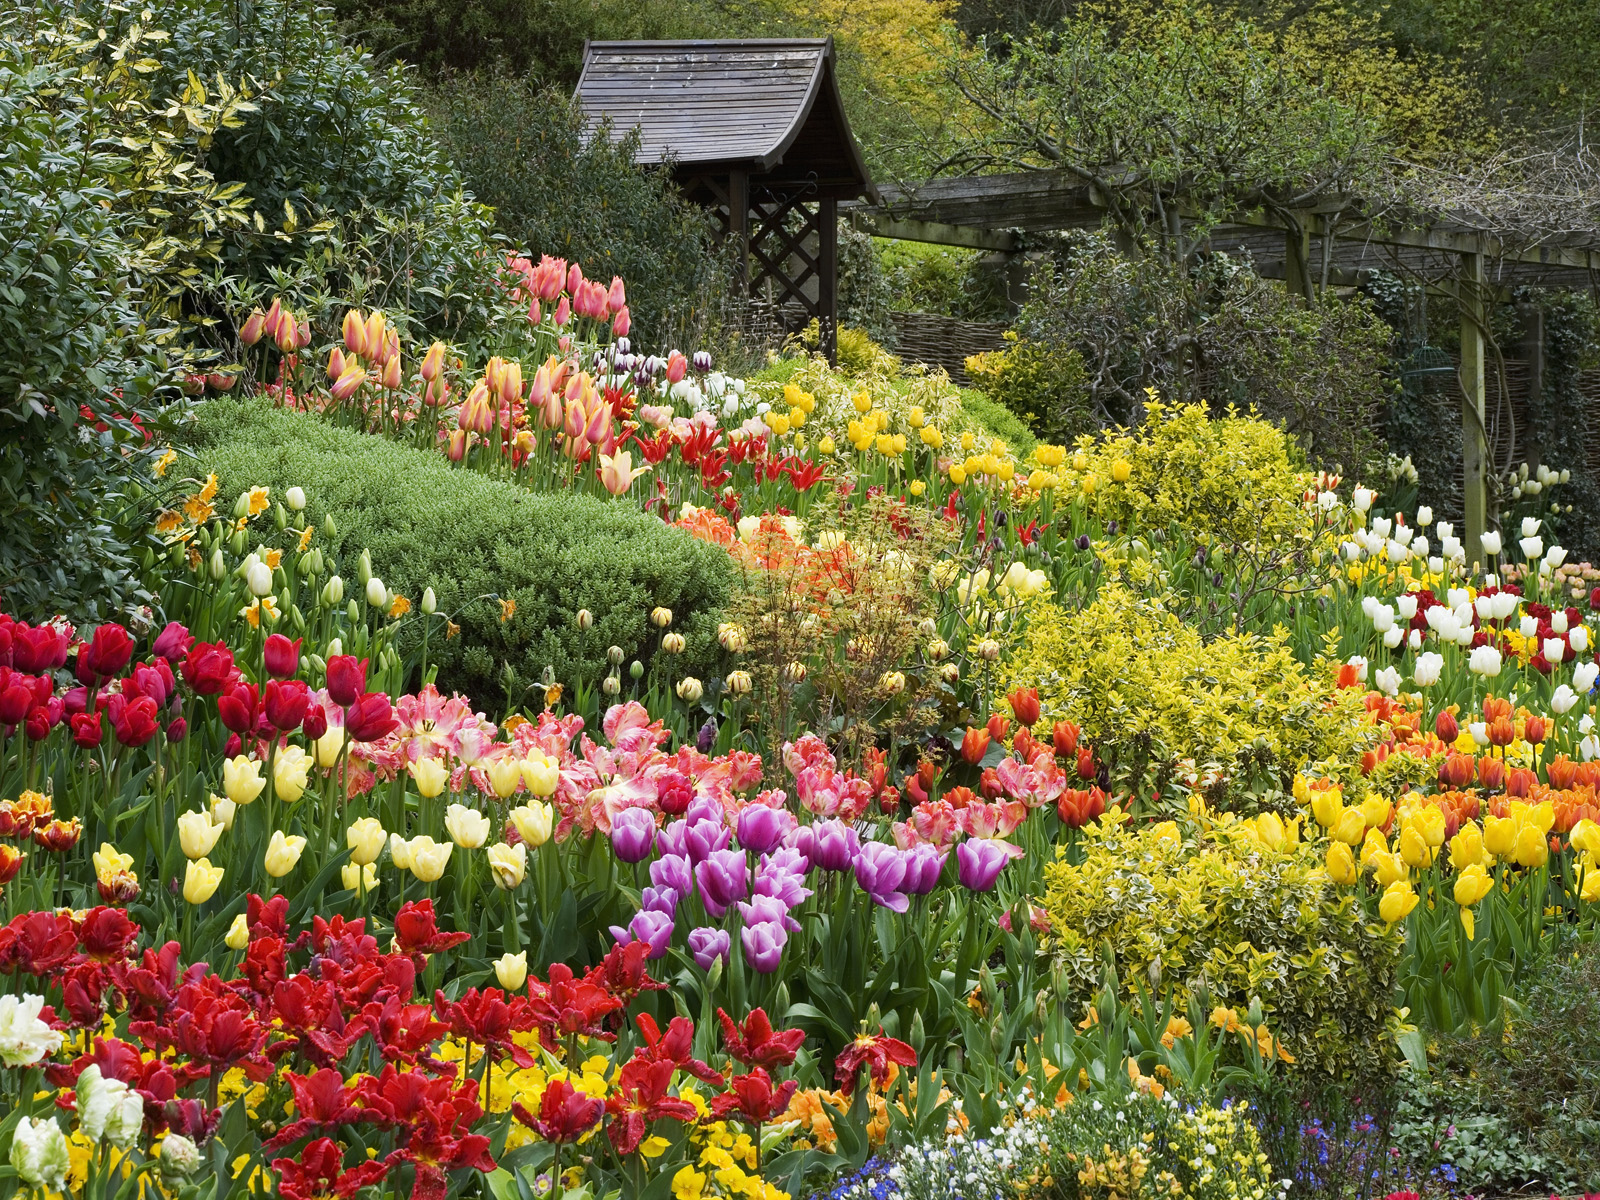 Vườn hoa đẹp đang chờ đón bạn đến thăm. Bạn sẽ được trải nghiệm cảm giác lạc trong một thế giới hoa đầy màu sắc tươi vui và ngất ngây mùi thơm từ những bông hoa xinh đẹp.